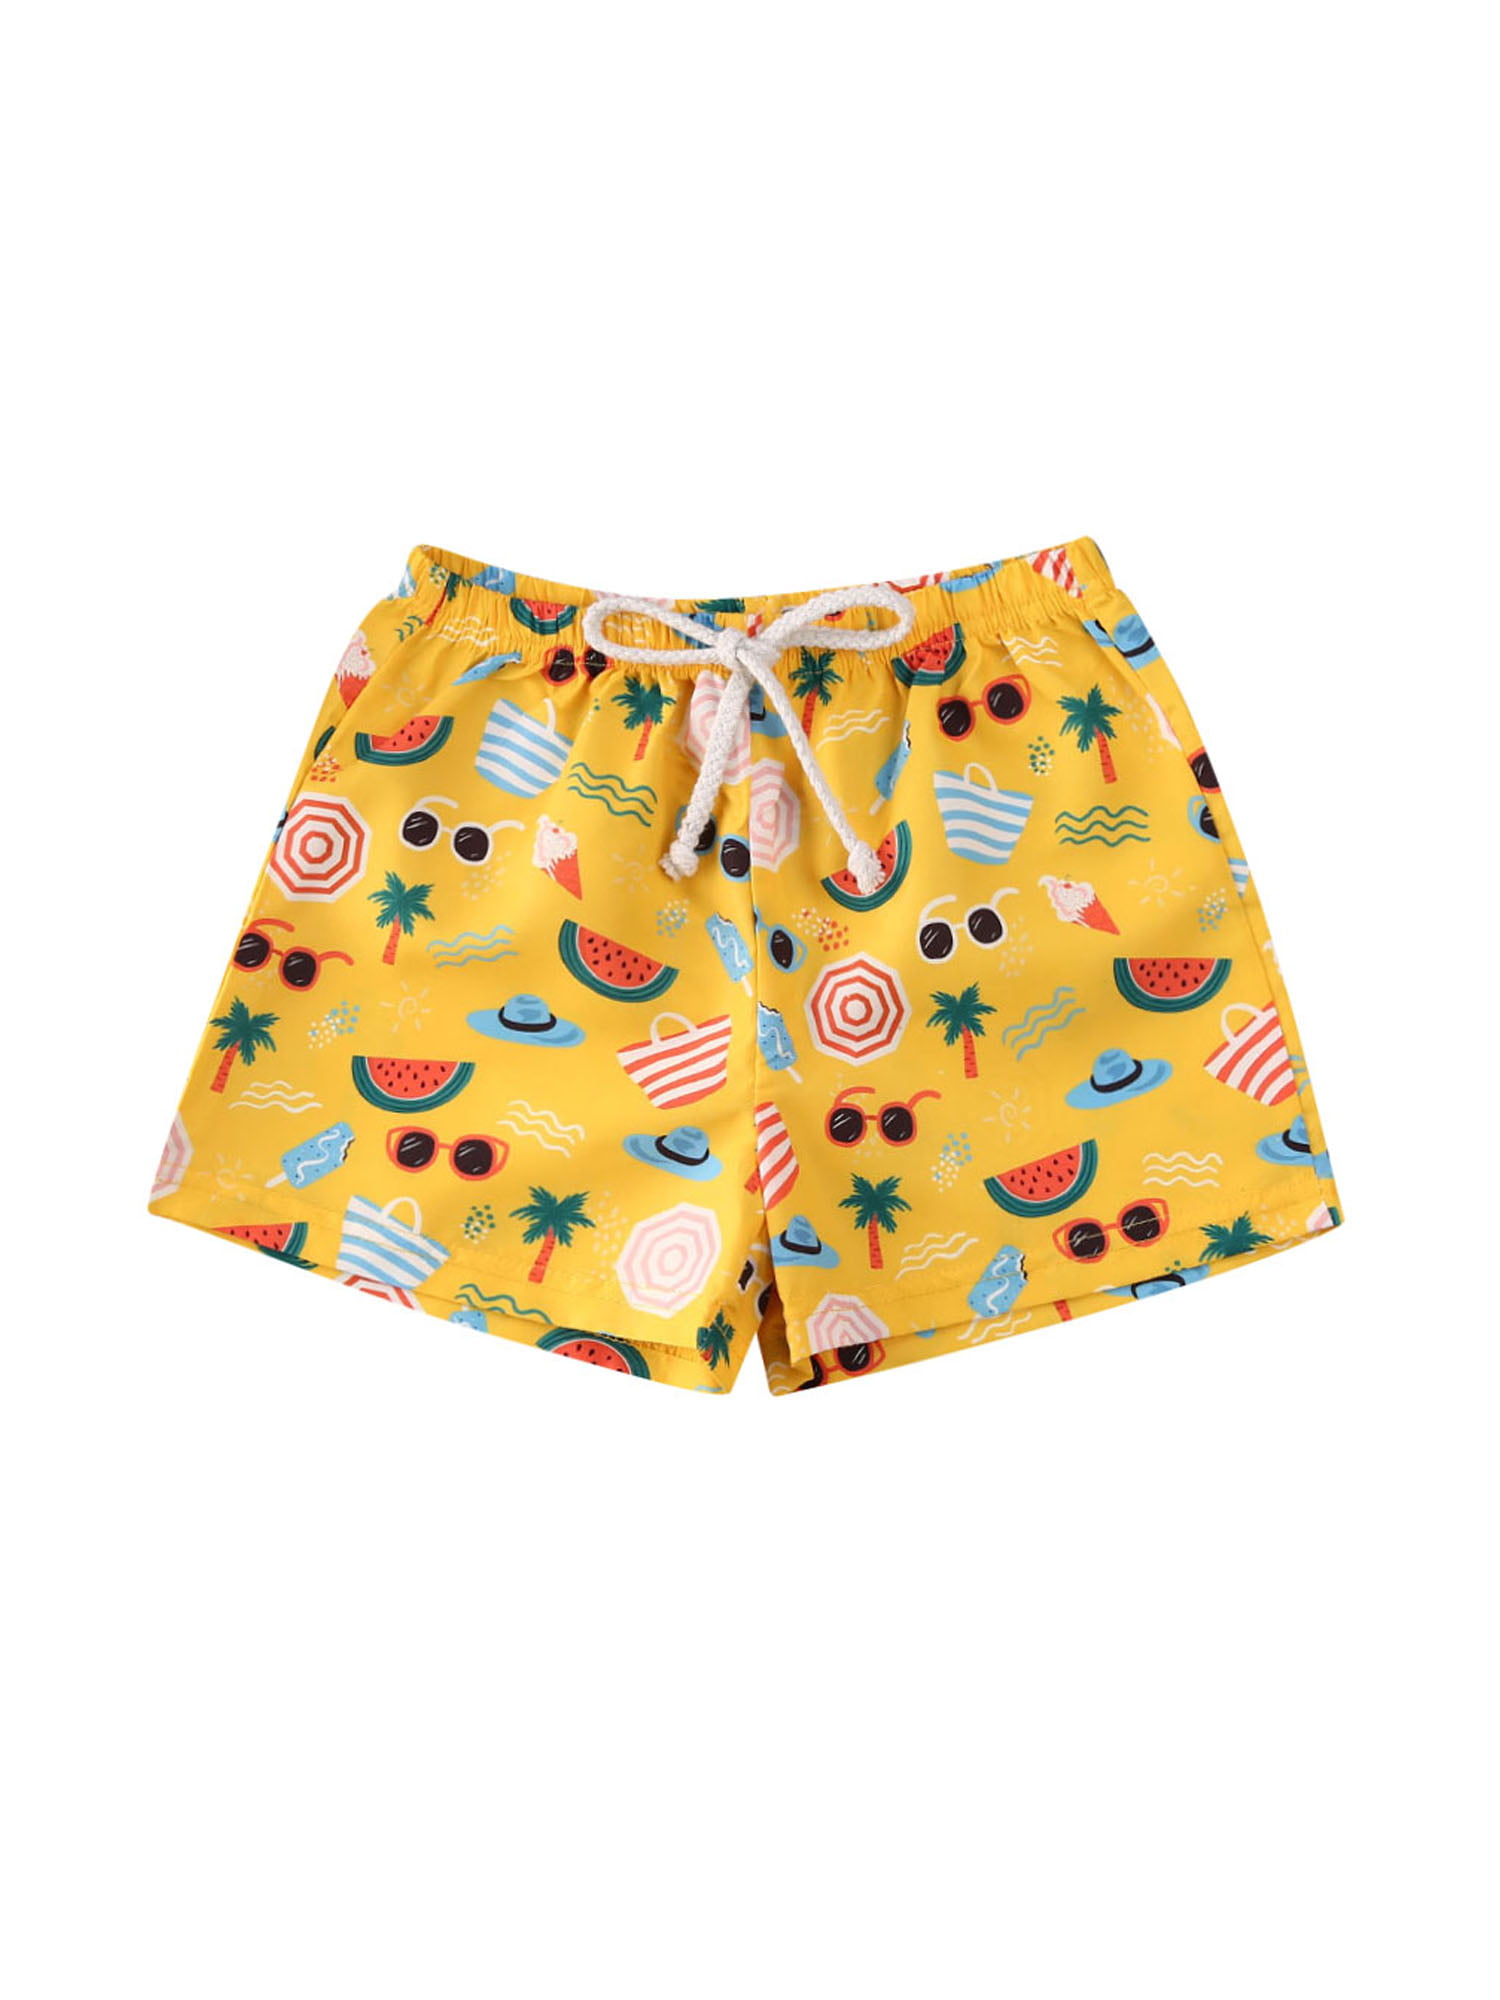 JBEELATE Toddler Girls Boys Summer Swim Trunks Beach Shorts Quick Dry Elastic Waist Baby Swimsuit Bottoms